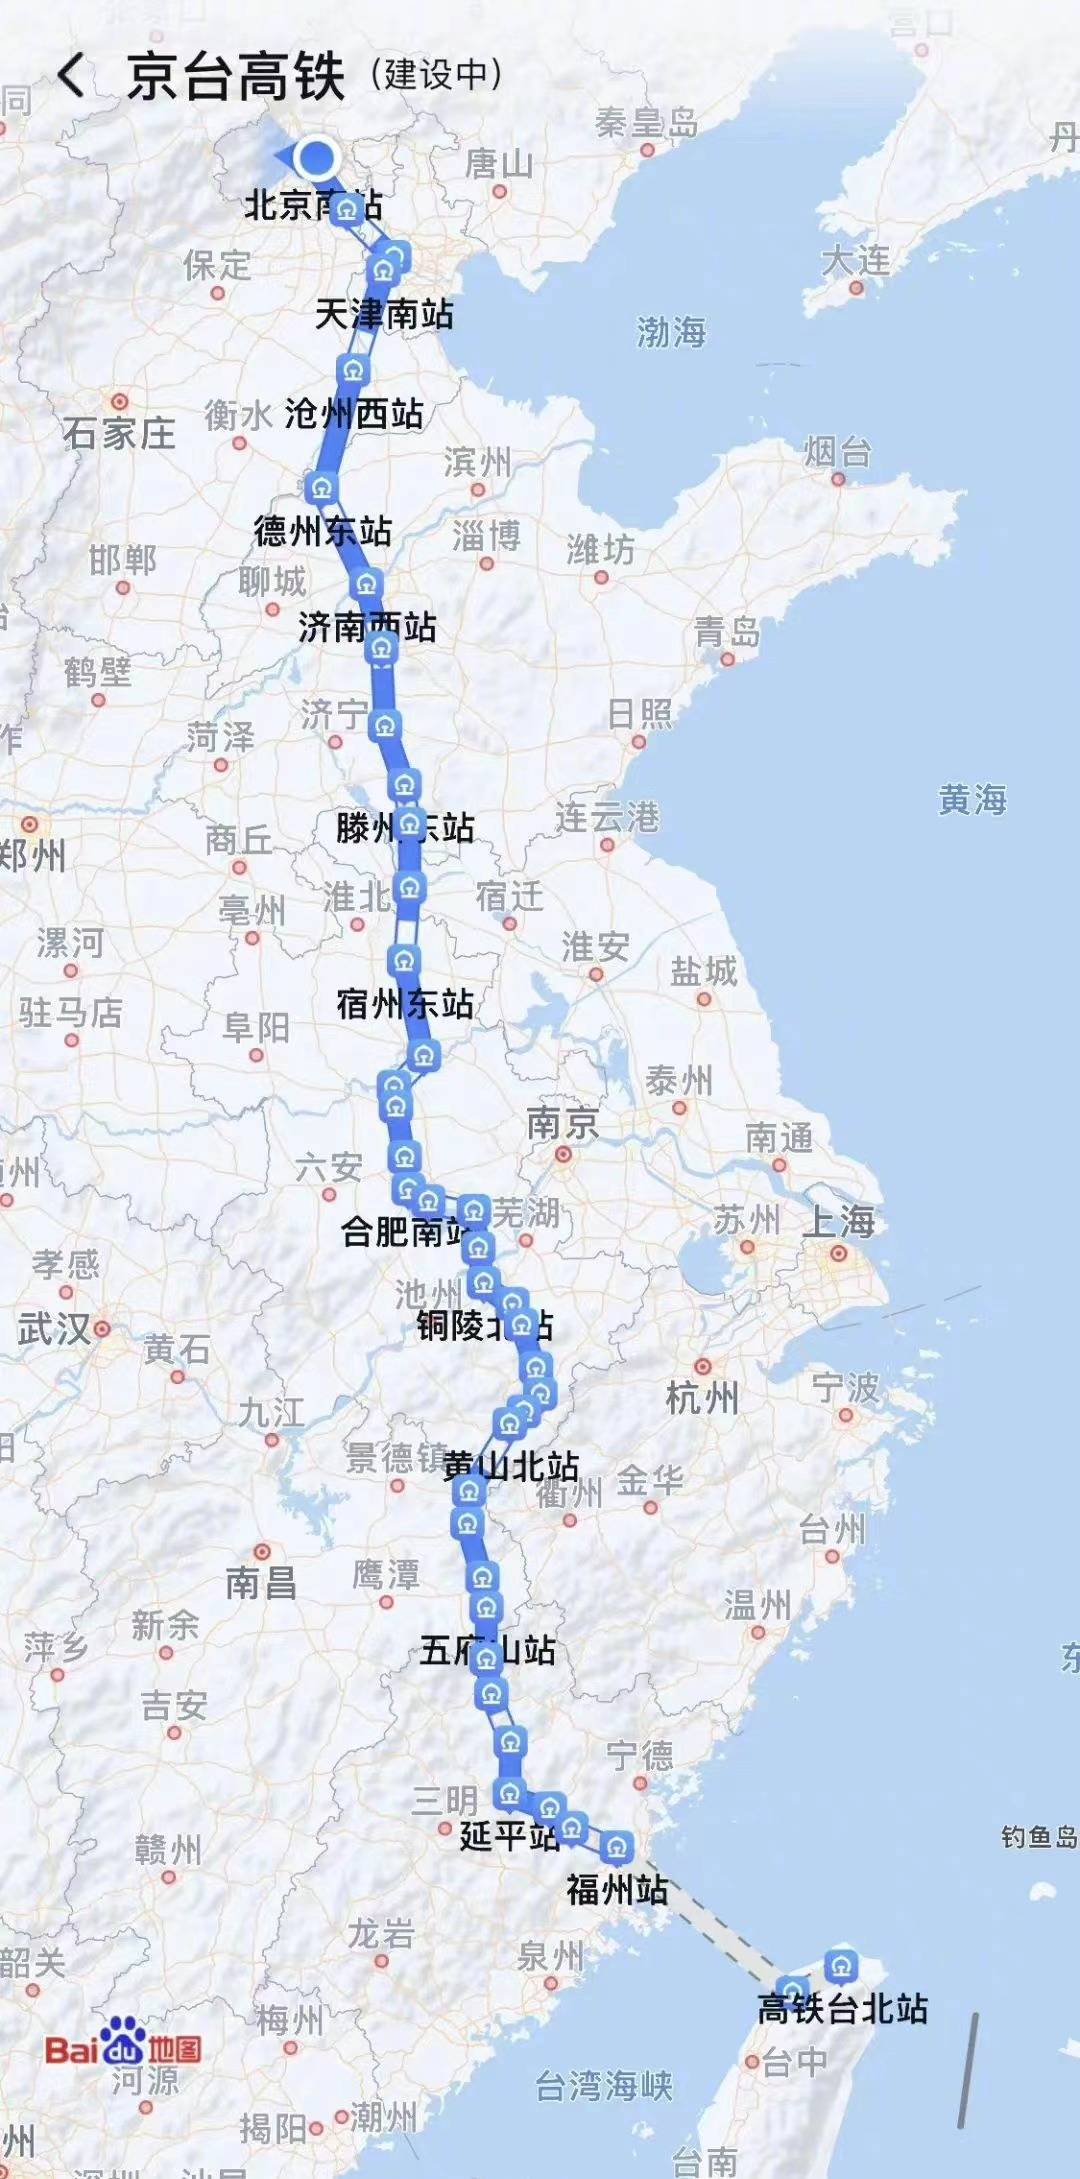 坐上高铁39站去台北，路程1小时，海底隧道成亮点